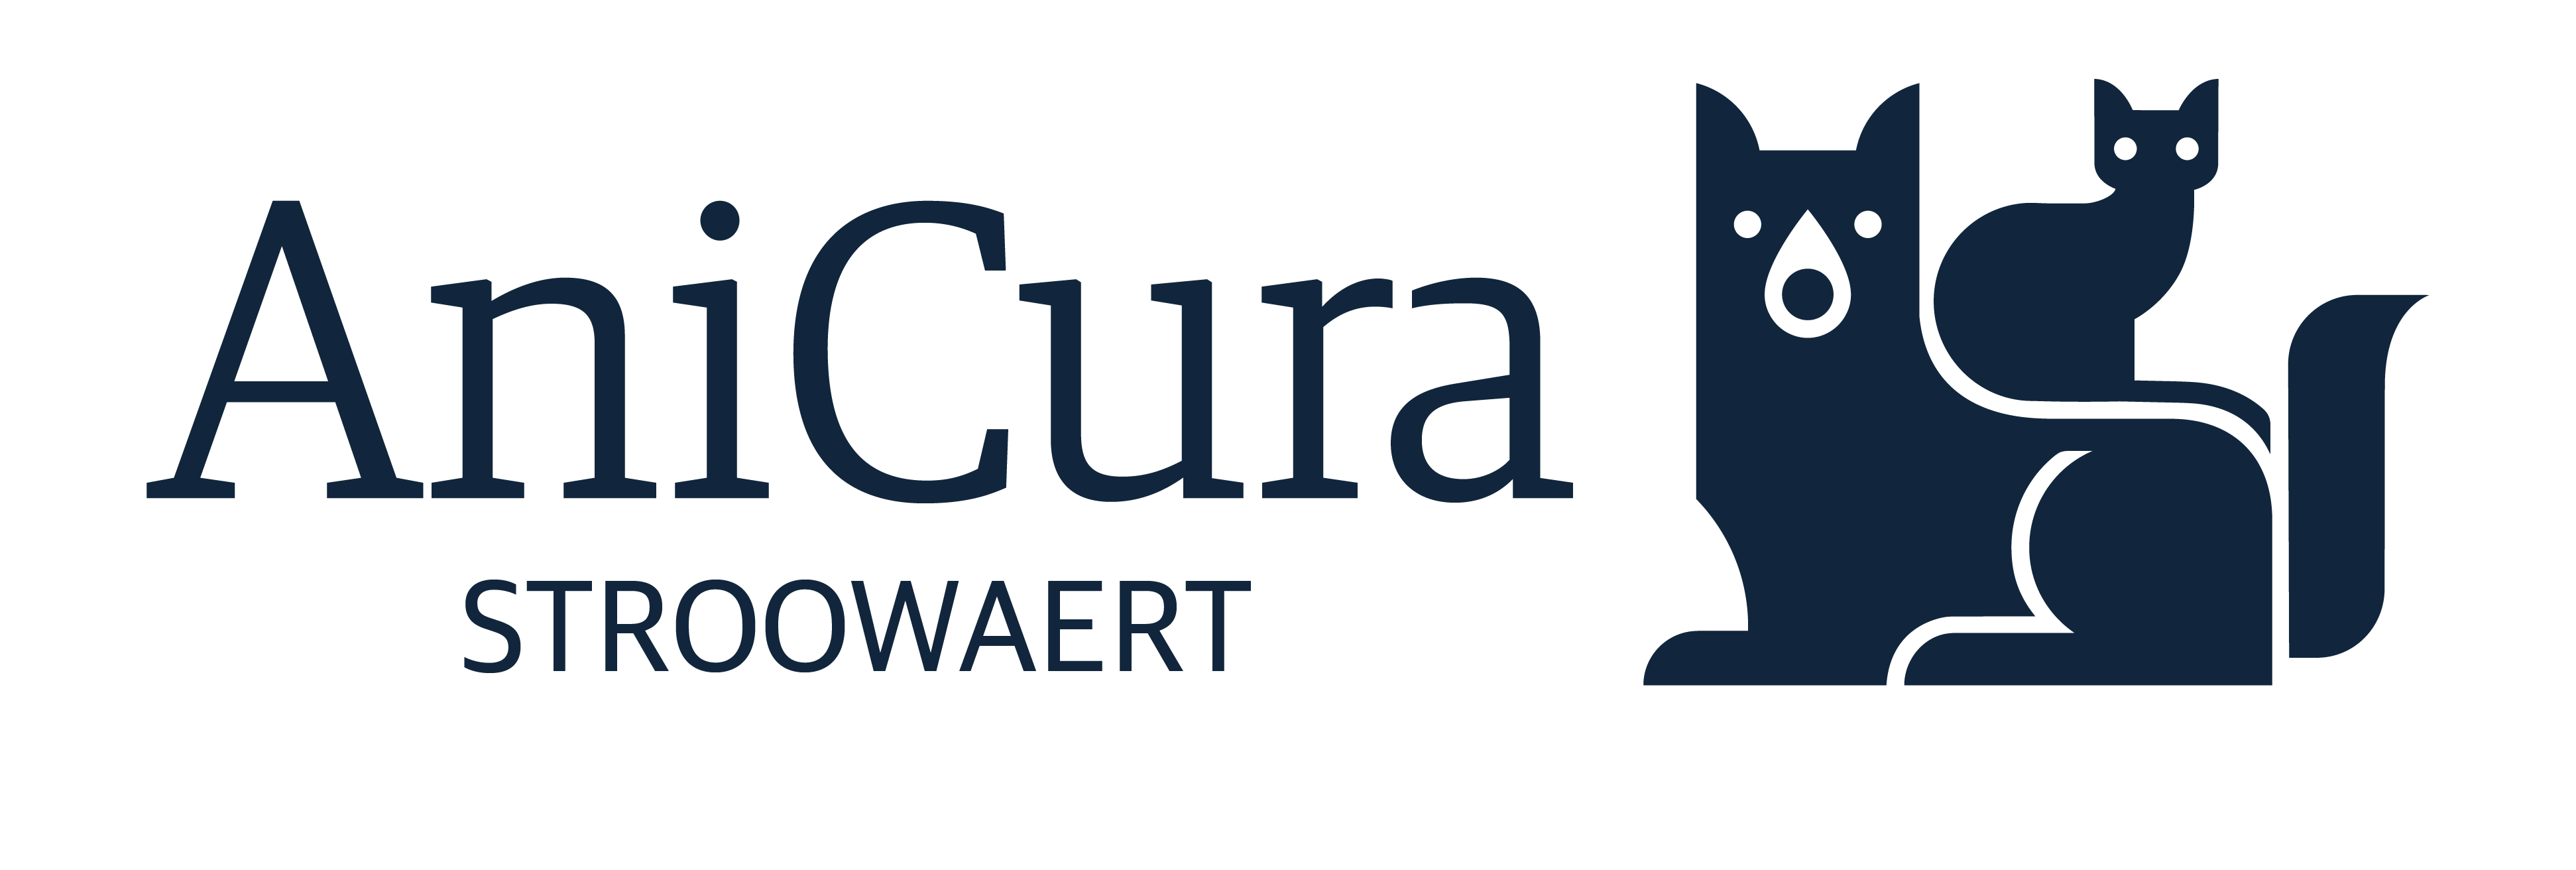 AniCura Stroowaert - Oud-Beijerland logo